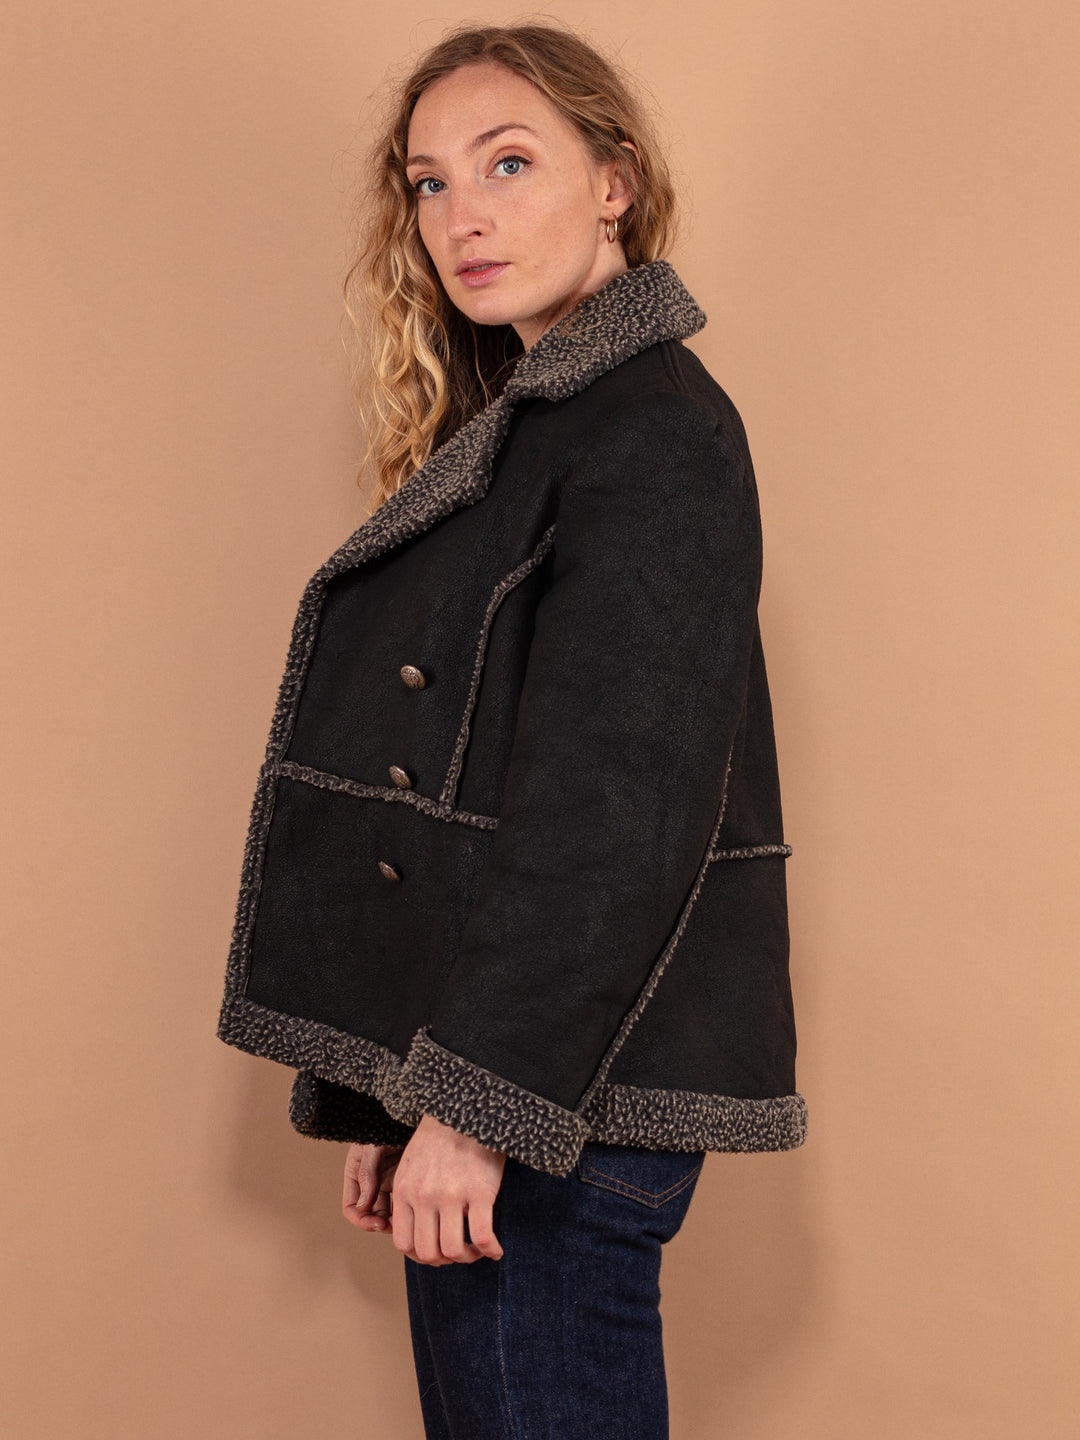 90's Black Sherpa Jacket, Size Medium, Vintage Women Casual Jacket, Military Style Short Coat, Vegan Faux Sheepskin Jacket, Autumn Clothing